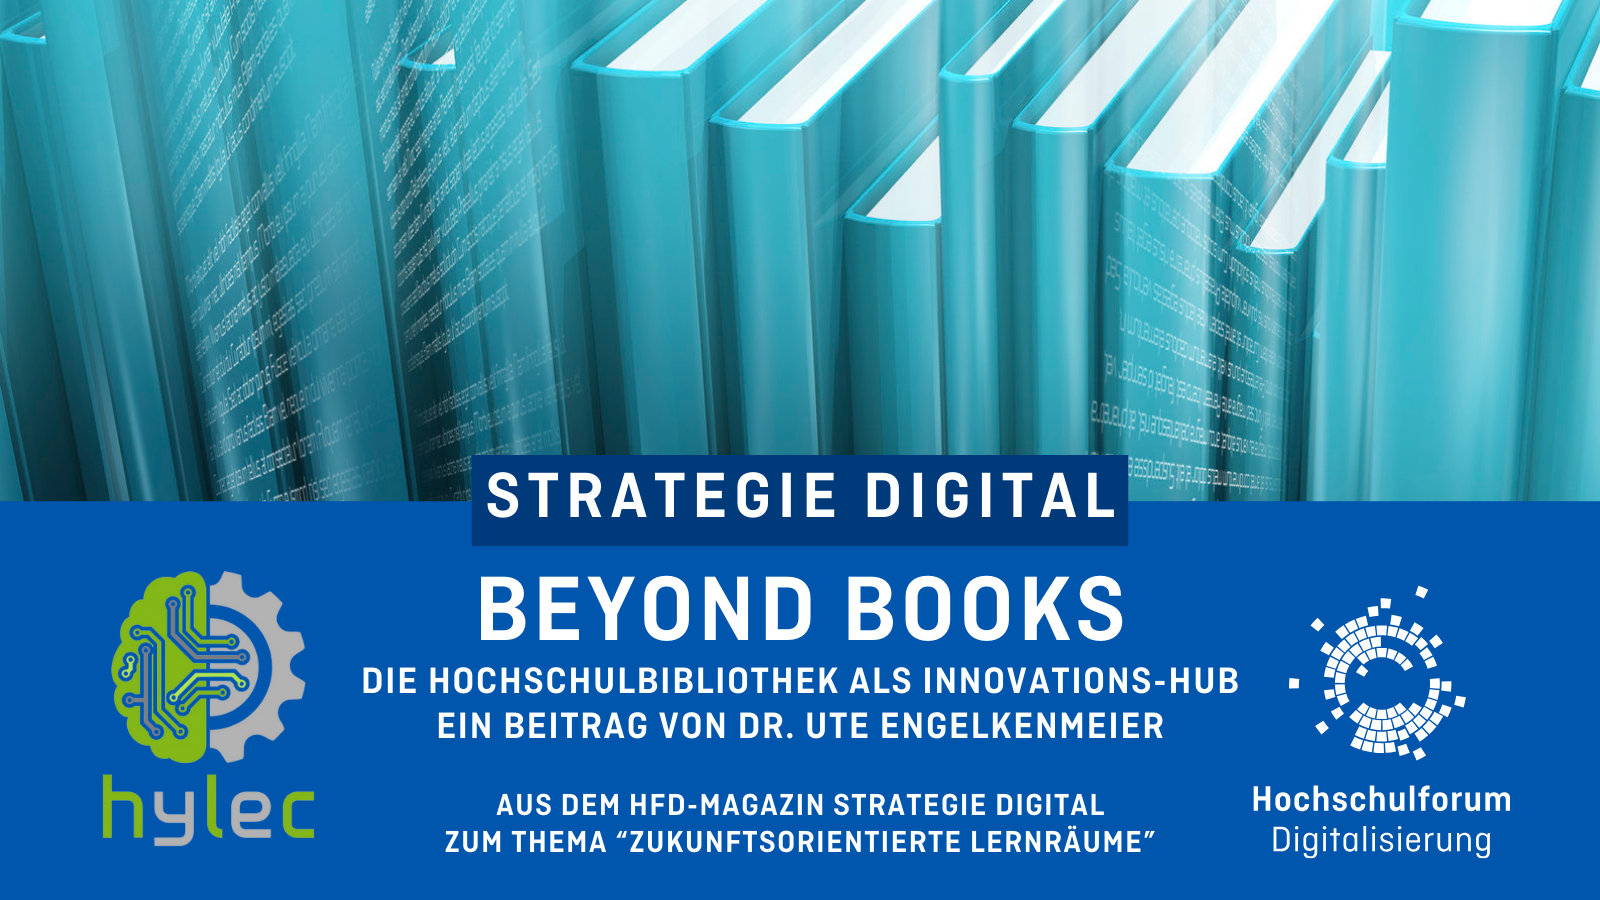 Beyond Books - Die Universitätsbibliothek als Innovations-Hub - Von Dr. Ute Engelkemeier. Logo rechts unten: Hochschulforum Digitalisierung. Linkes Logo: hylec der TU Dortmund